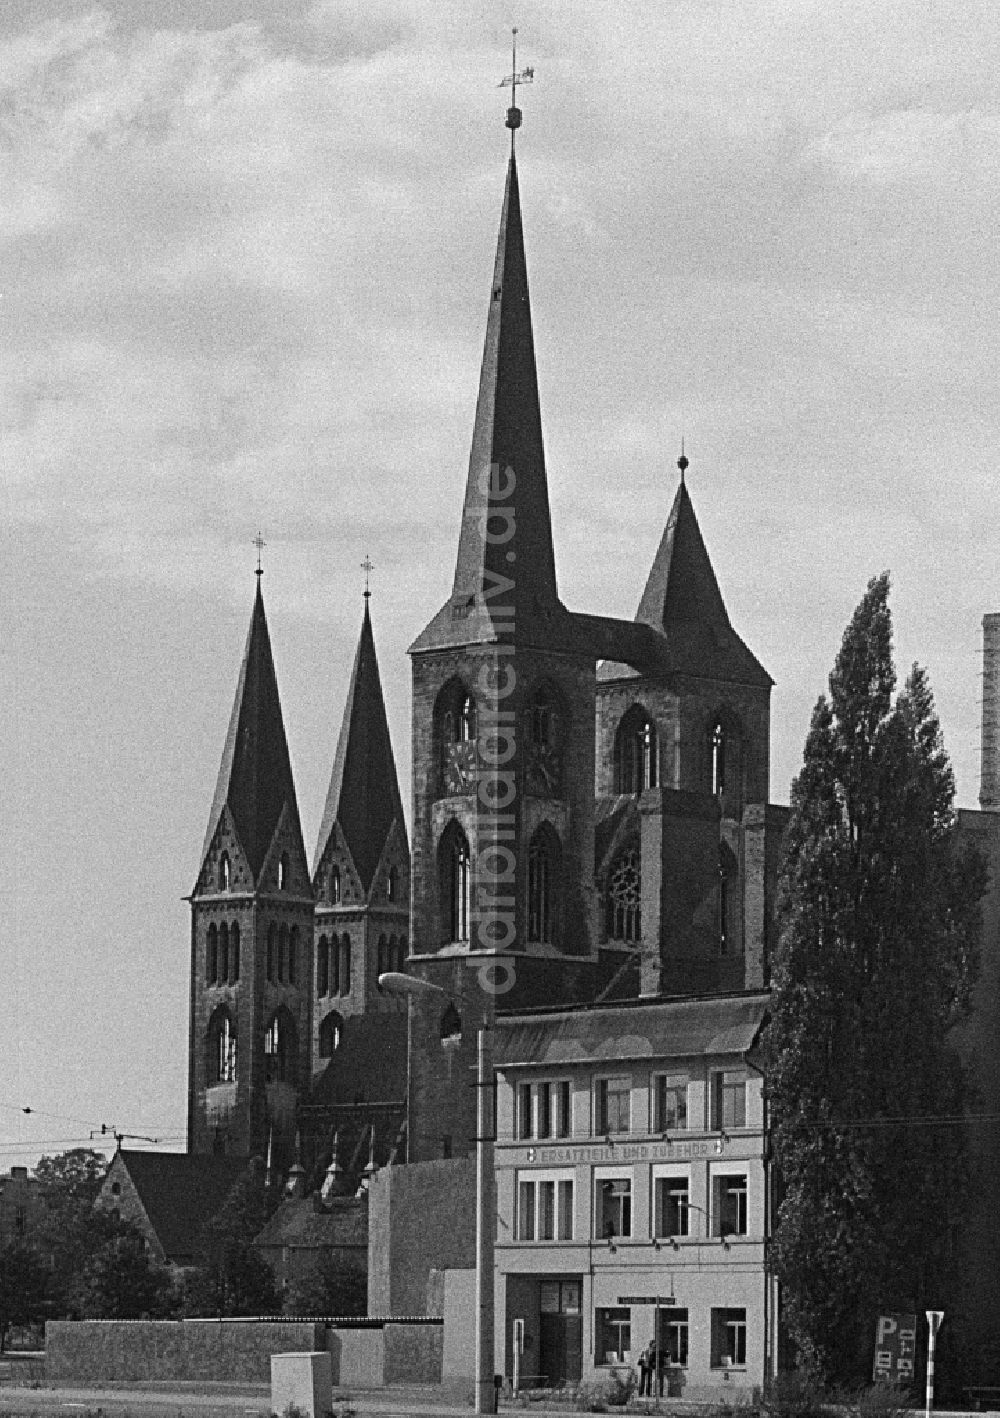 DDR-Fotoarchiv: Halberstadt - Kirchenbauwerk Martinikirche mit dem Büttnerhaus in Halberstadt in Sachsen-Anhalt in der DDR